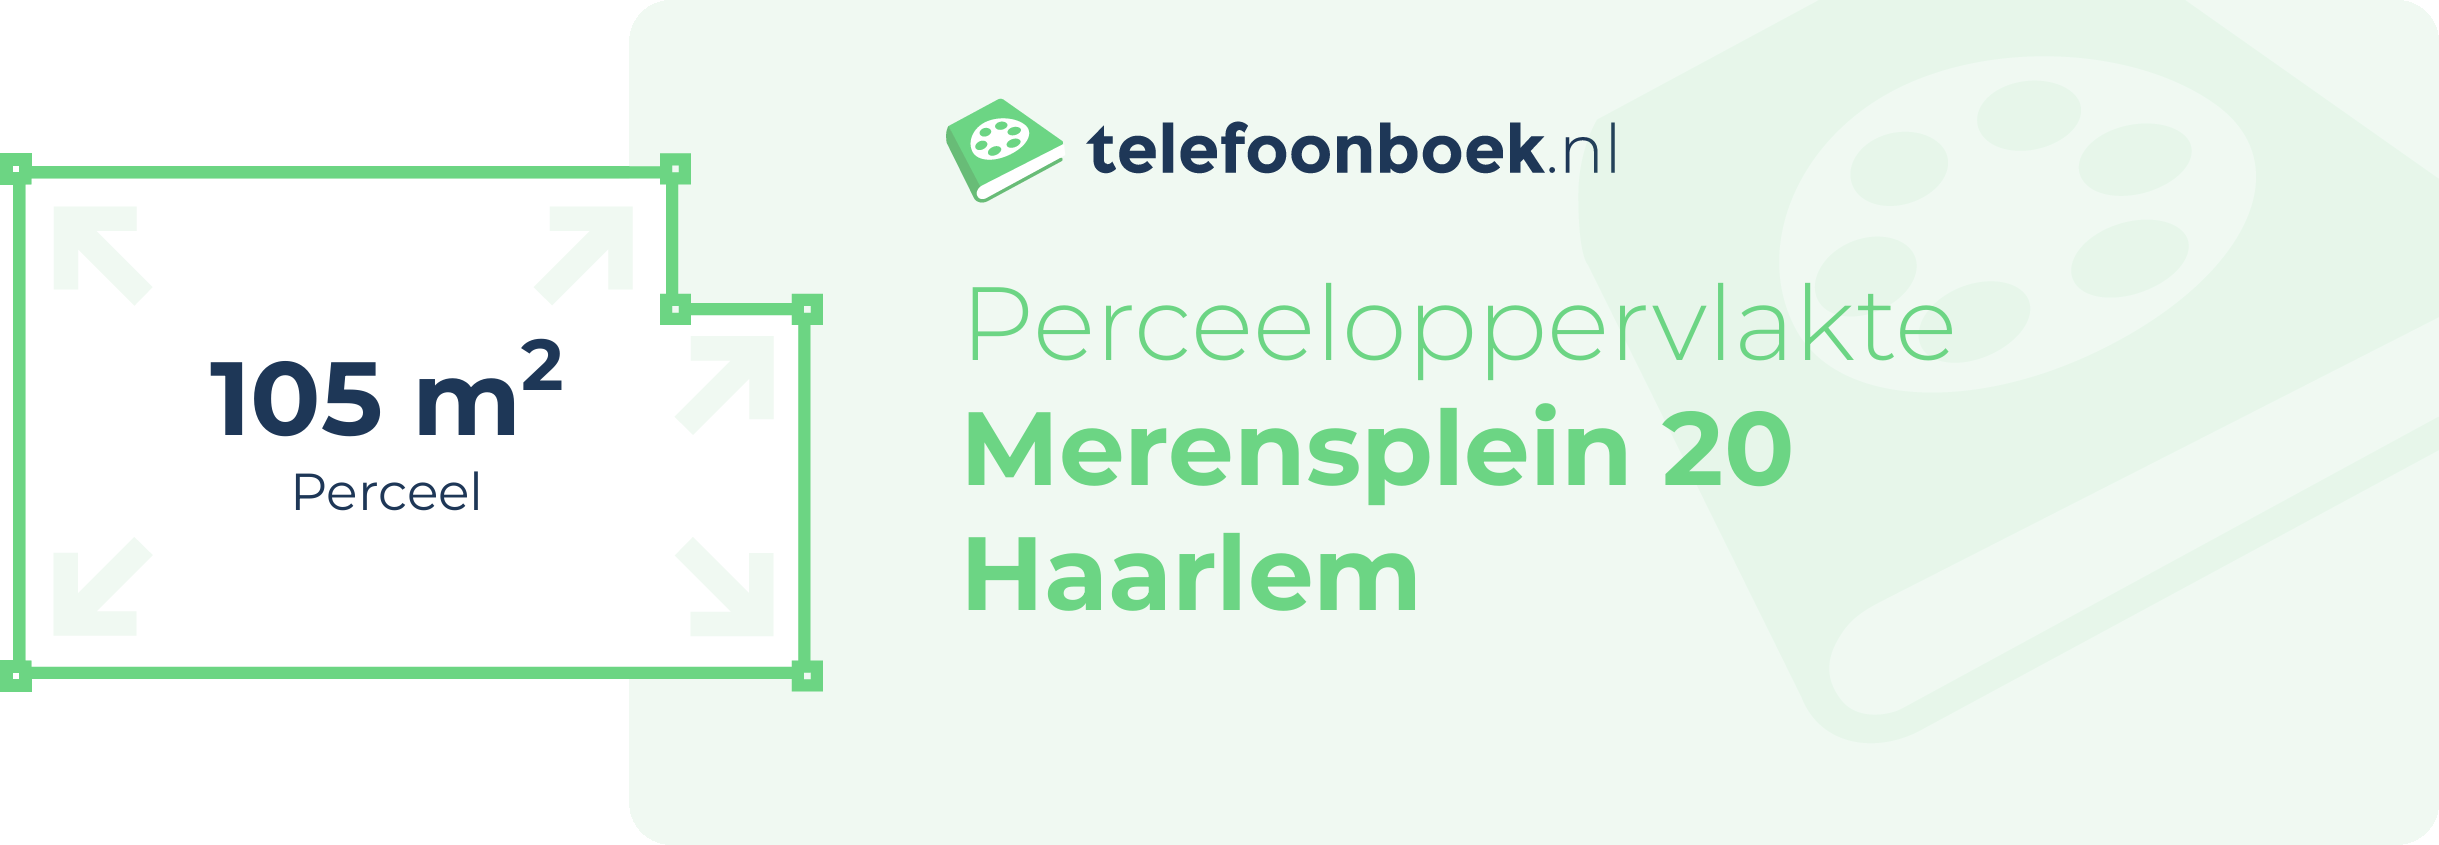 Perceeloppervlakte Merensplein 20 Haarlem